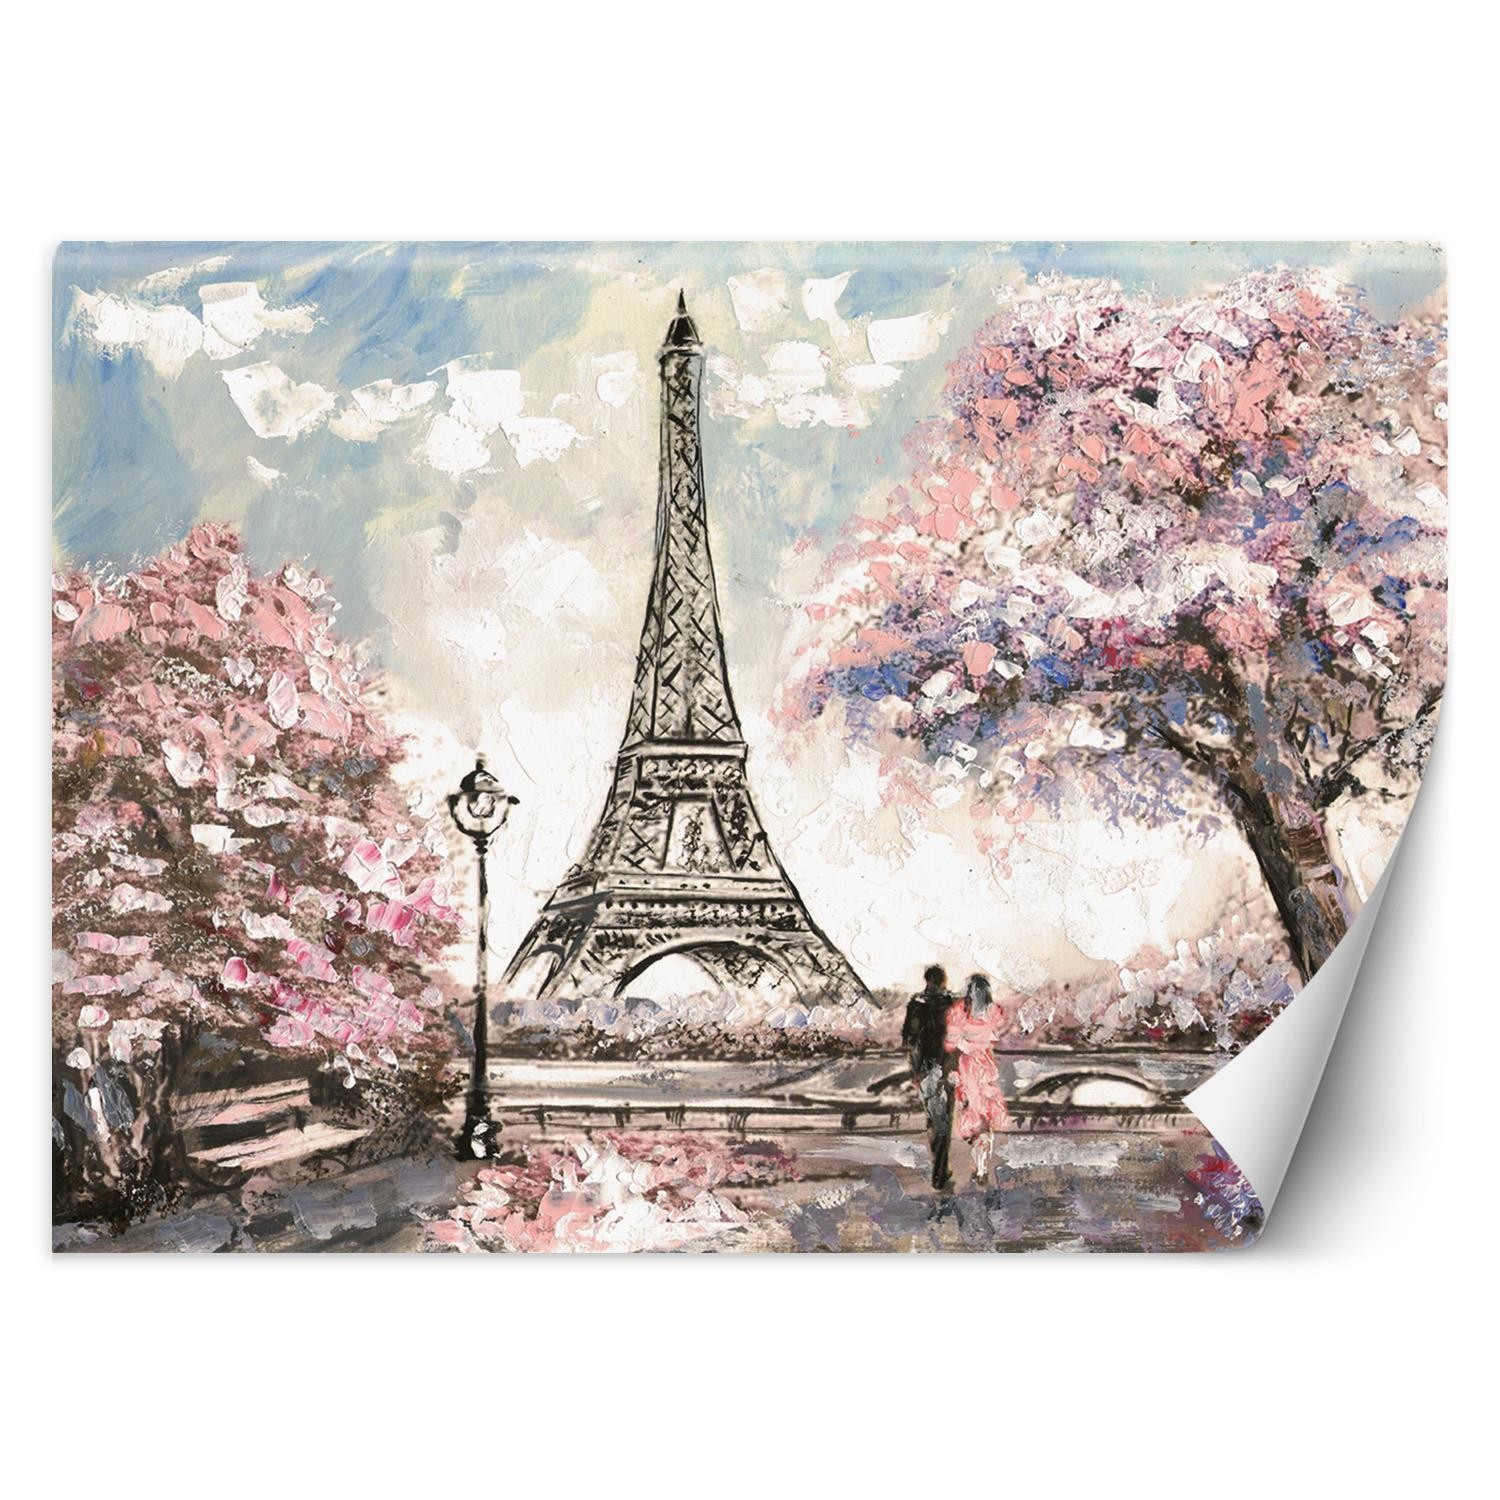 Trend24 – Behang – Parijs – Vliesbehang – Fotobehang – Behang Woonkamer – 400x280x2 cm – Incl. behanglijm